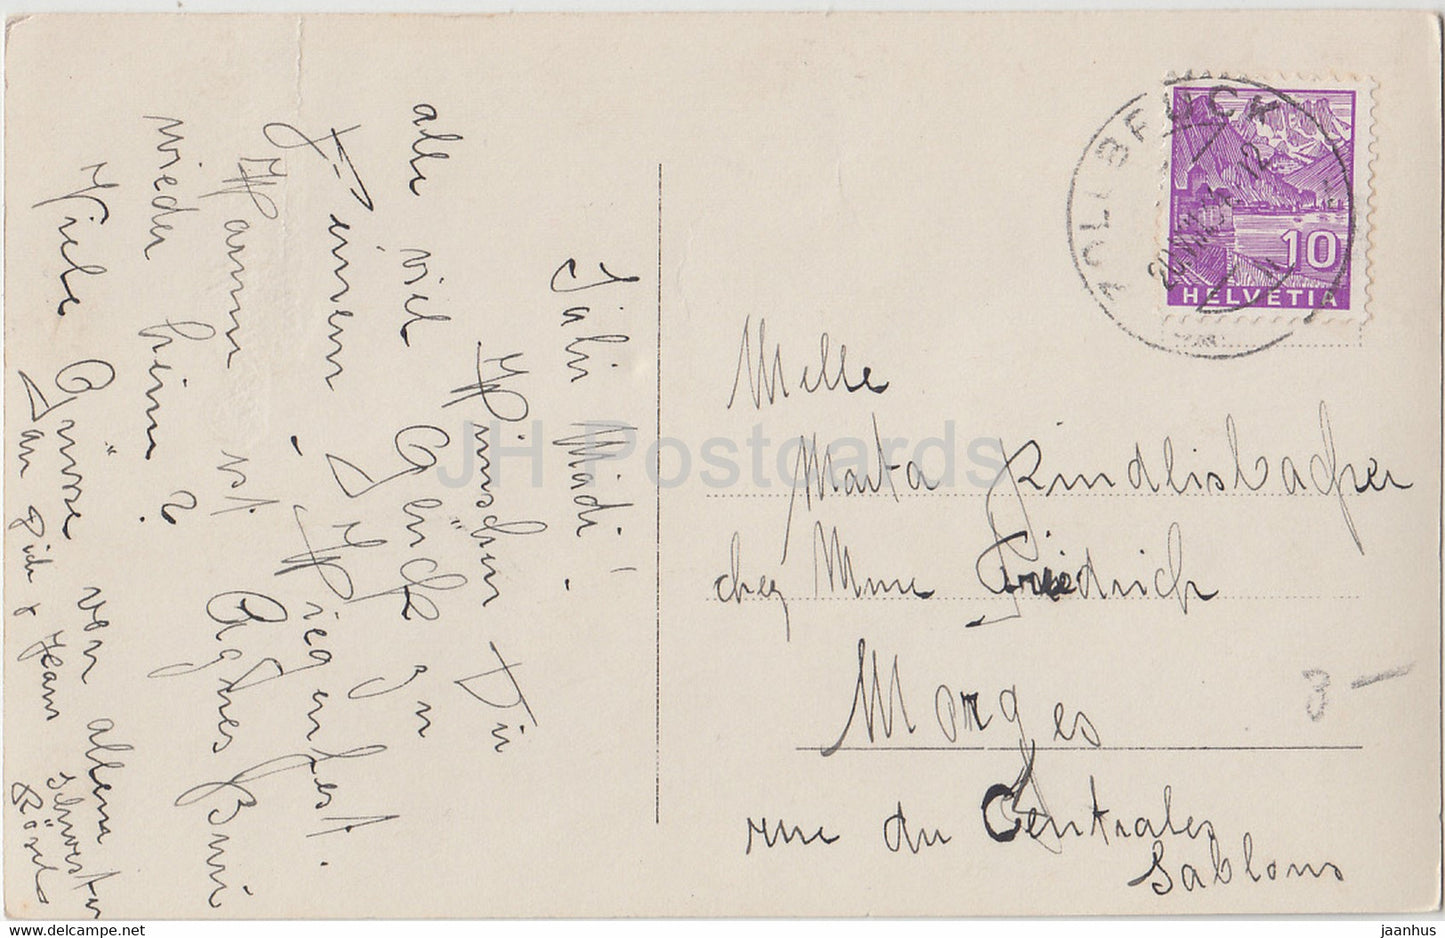 Carte de vœux d'anniversaire - Die besten Wunsche zum Geburtstage - garçon - Lepo 3156/1 - carte postale ancienne - Allemagne - utilisé